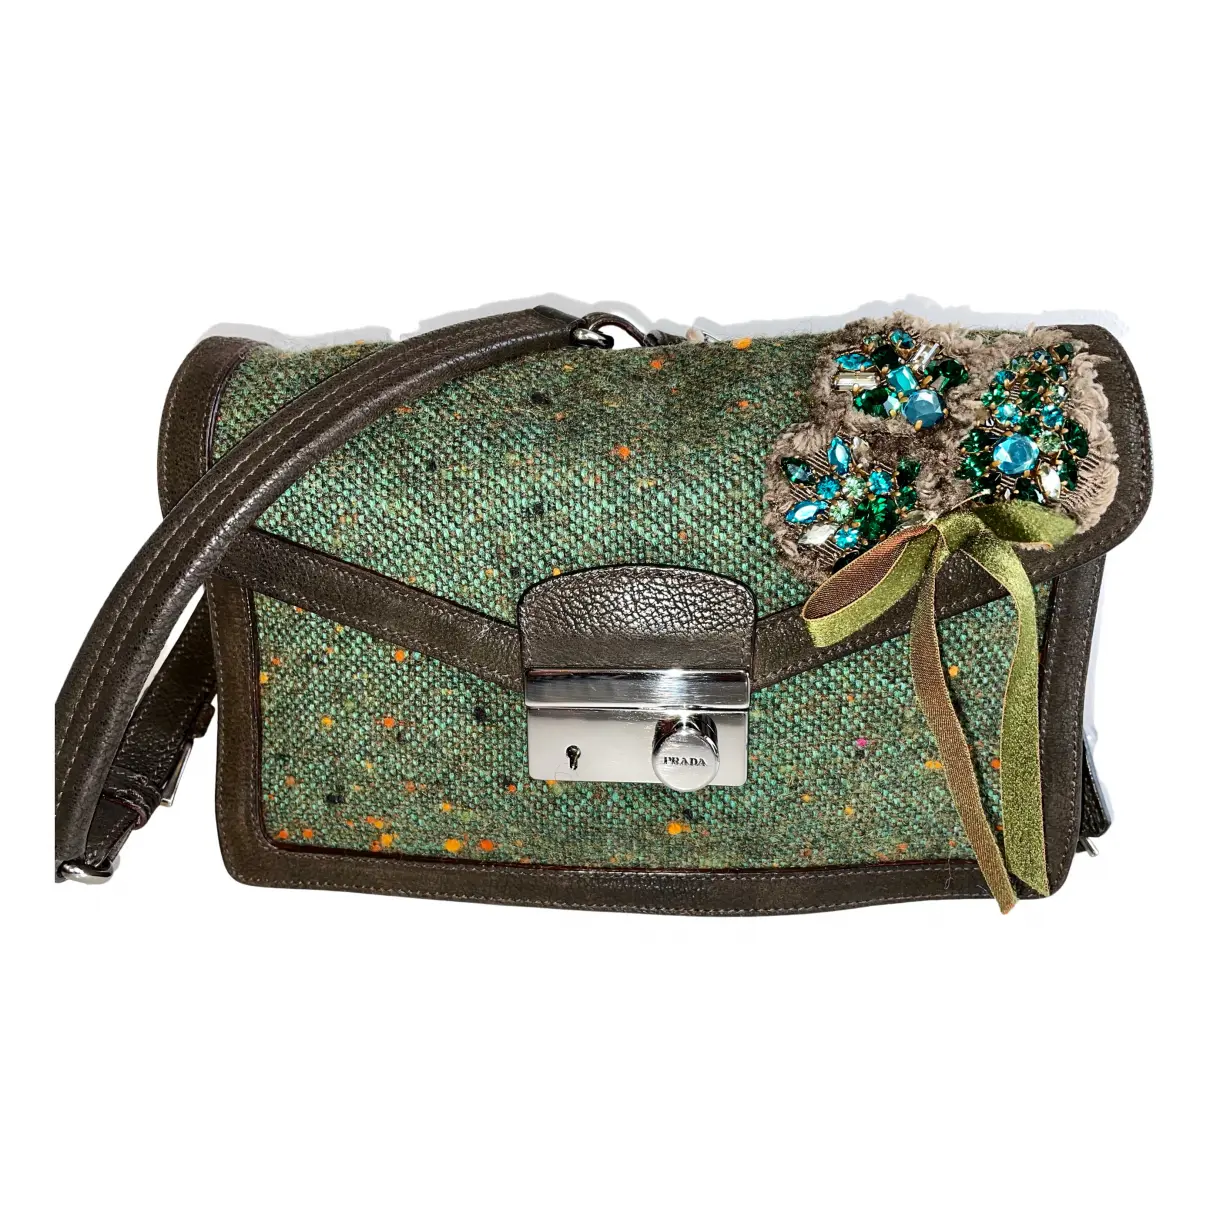 Sidonie tweed handbag Prada - Vintage